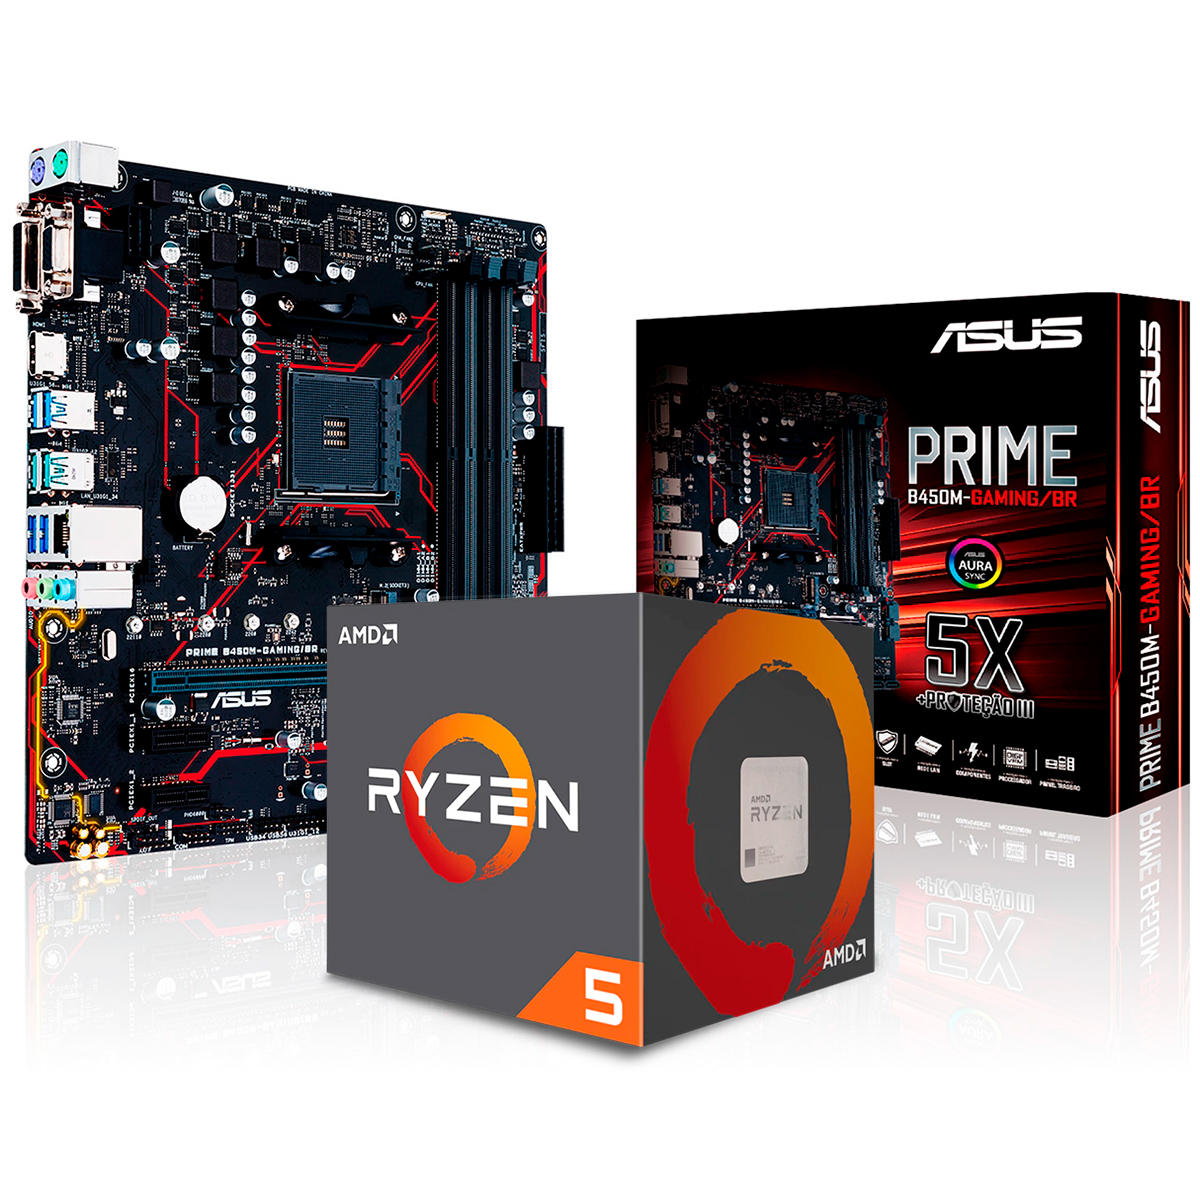 Kit Upgrade AMD Ryzen™ 5 3600X + Asus Prime B450M GAMING/BR